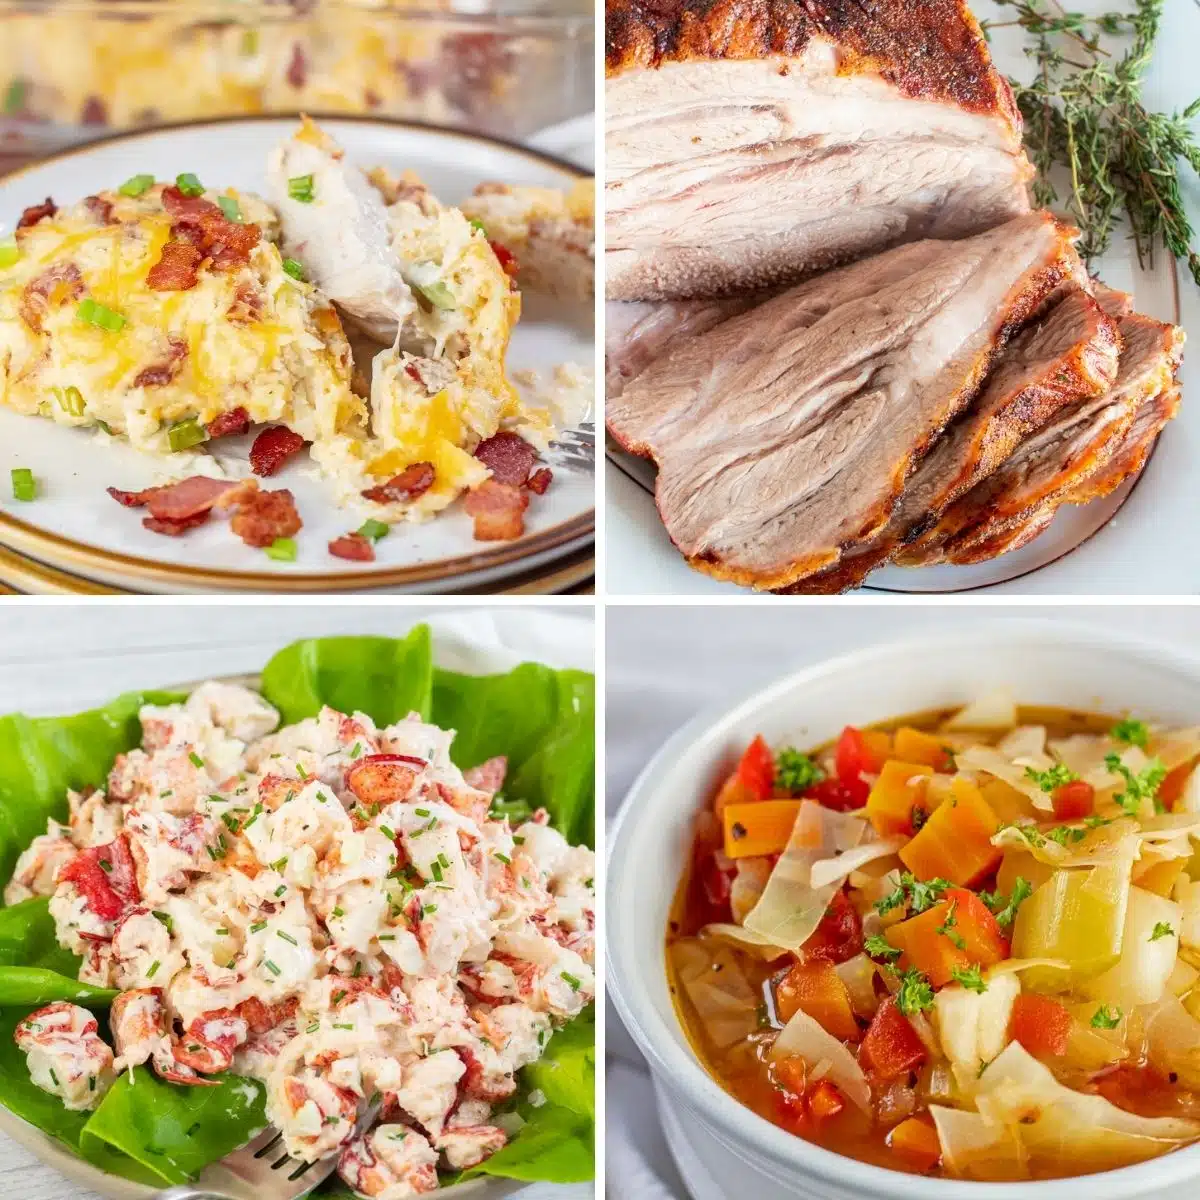 जनवरी के महीने में बनाने के लिए सर्वोत्तम व्यंजन कोलाज छवि जिसमें नए साल के लिए 4 बेहतरीन व्यंजन शामिल हैं।